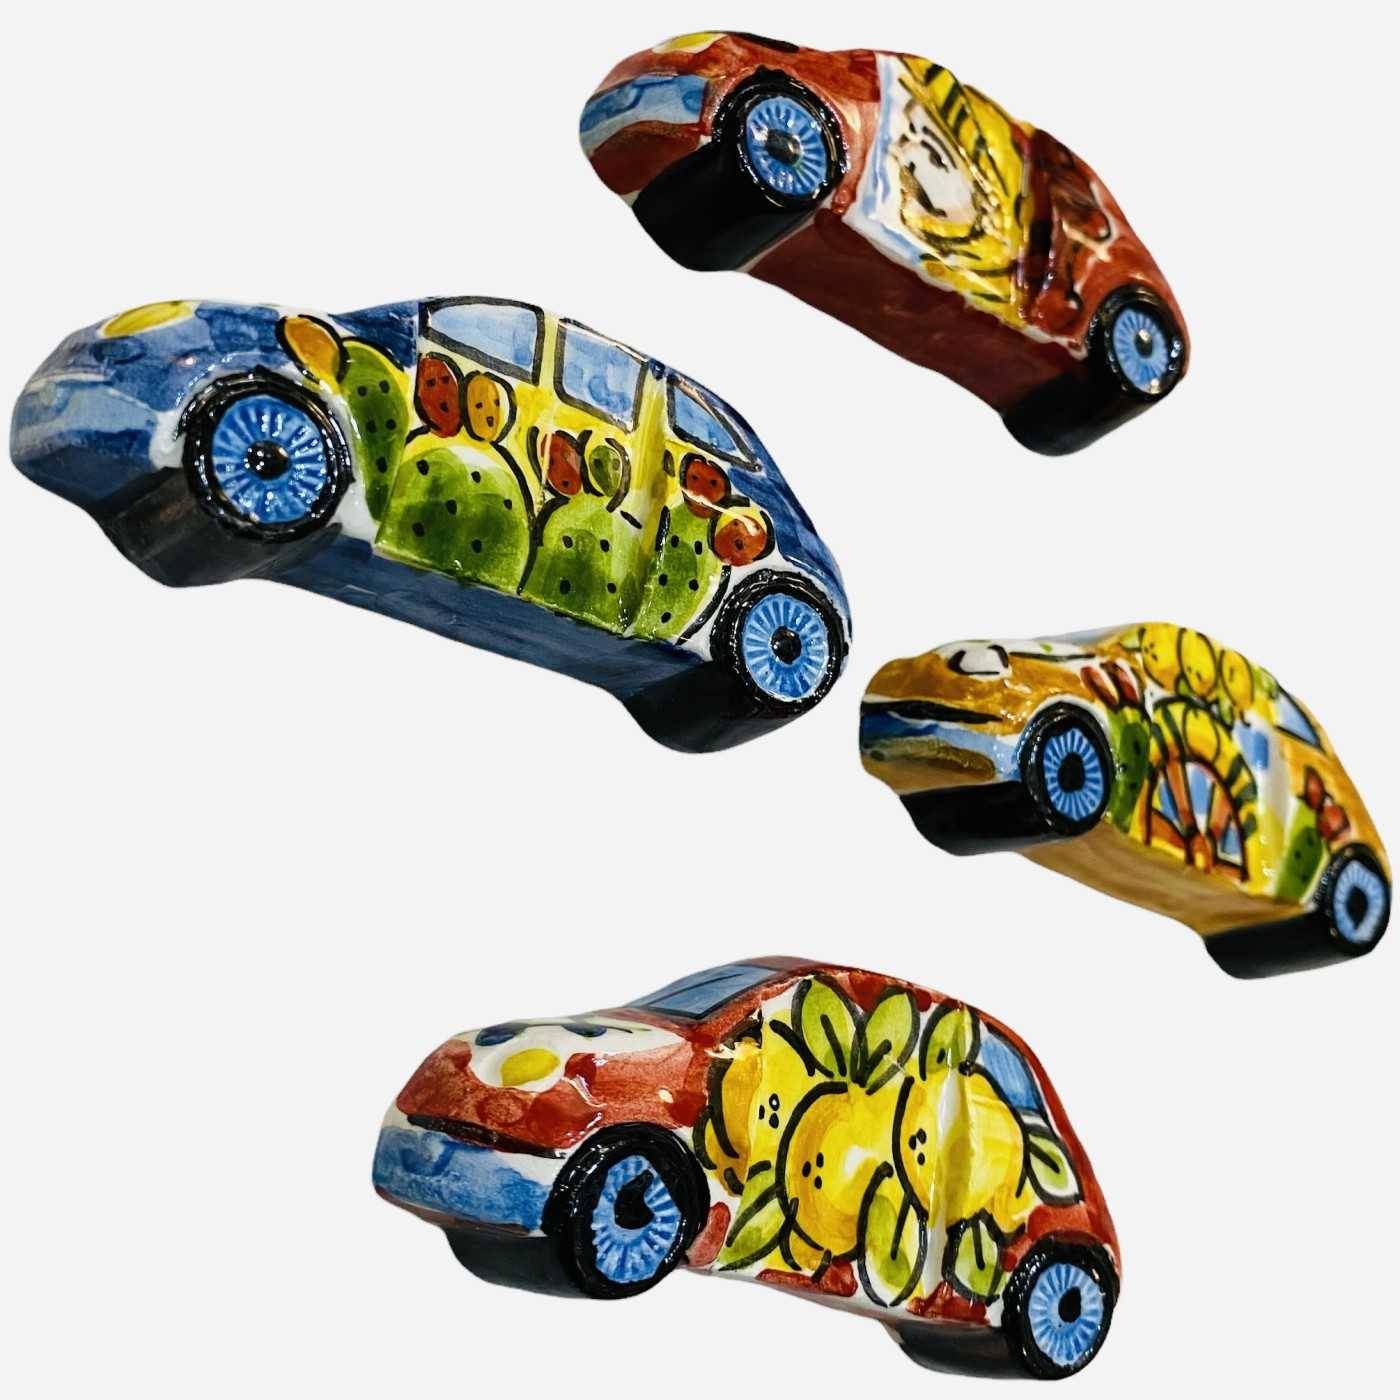 Aimant de voiture magnétique Cinquecento 500 Caltagirone en céramique  décoré à la main Décoration sicilienne - Mesure 7,5 x 3,5